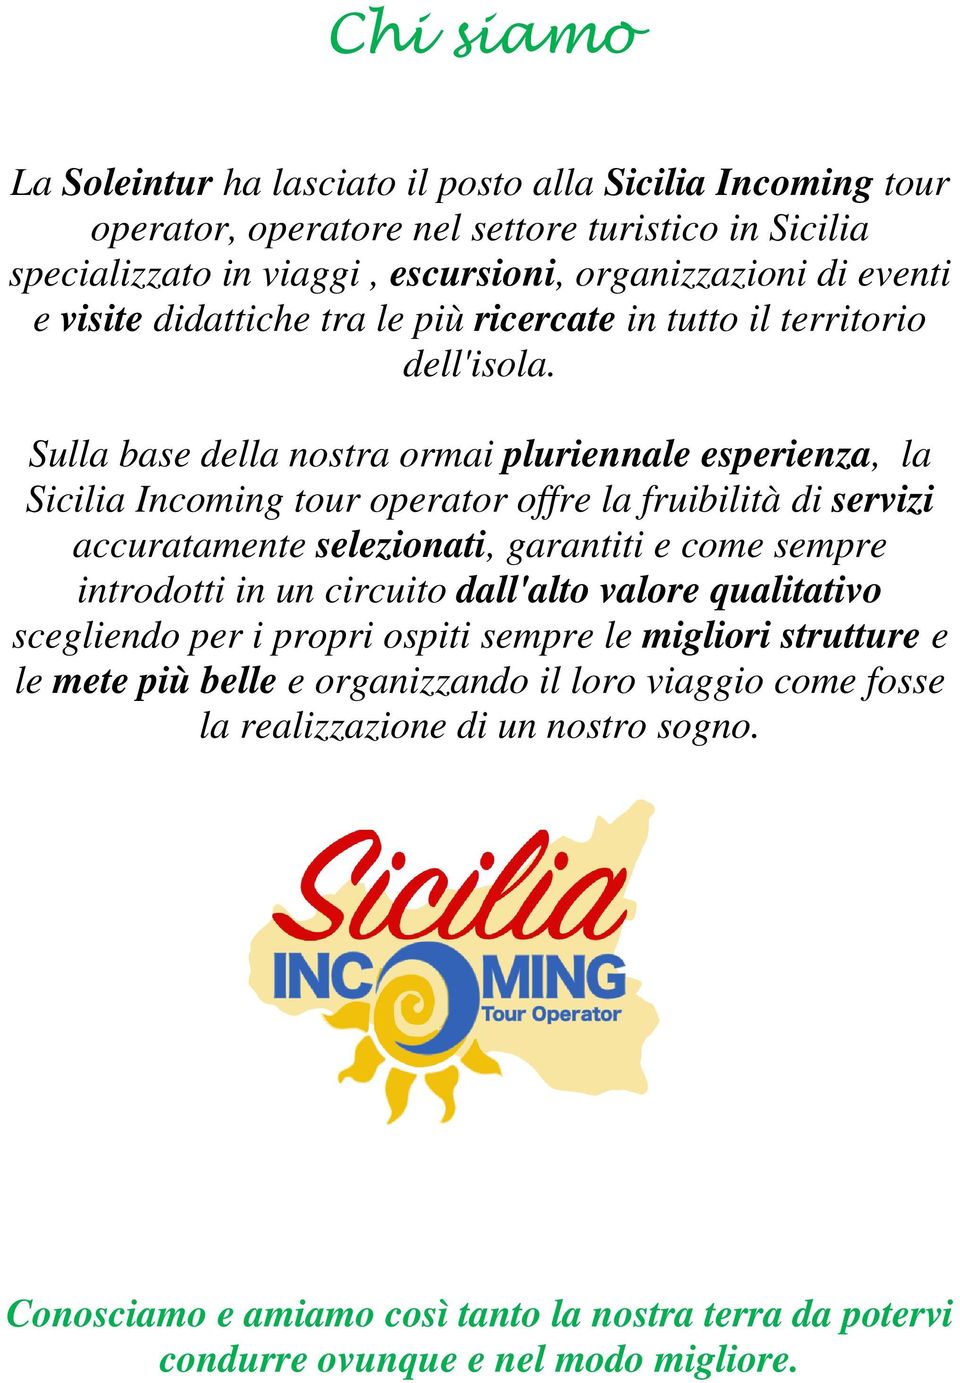 Sulla base della nostra ormai pluriennale esperienza, la Sicilia Incoming tour operator offre la fruibilità di servizi accuratamente selezionati, garantiti e come sempre introdotti in